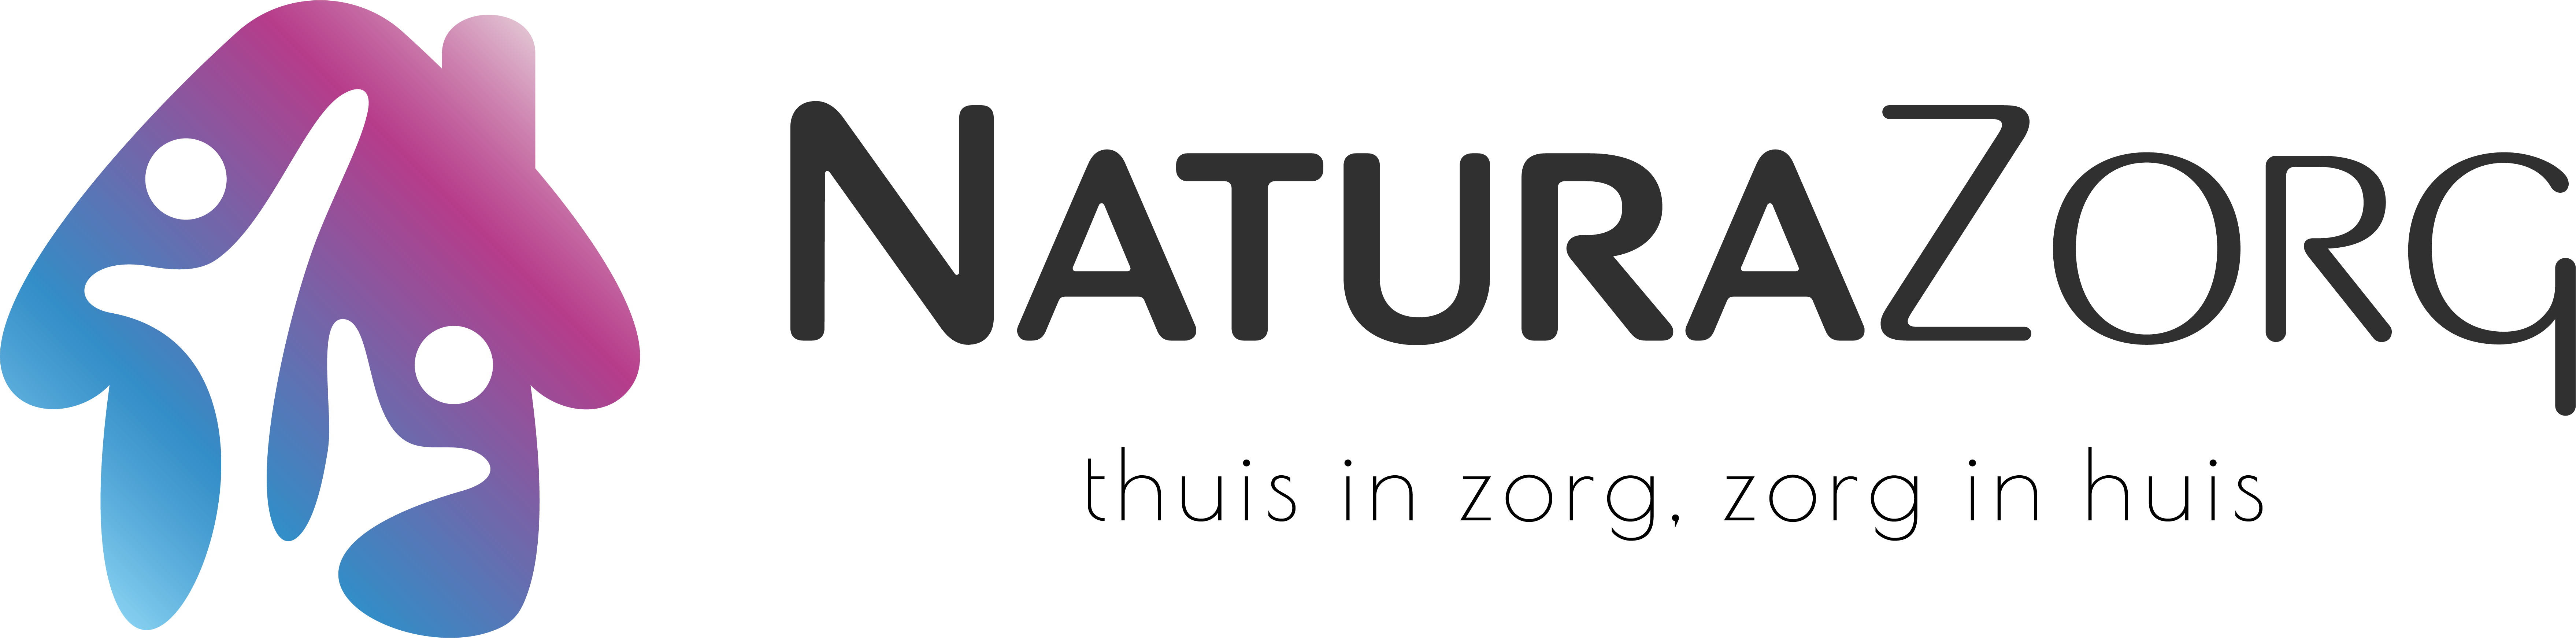 NaturaZorg